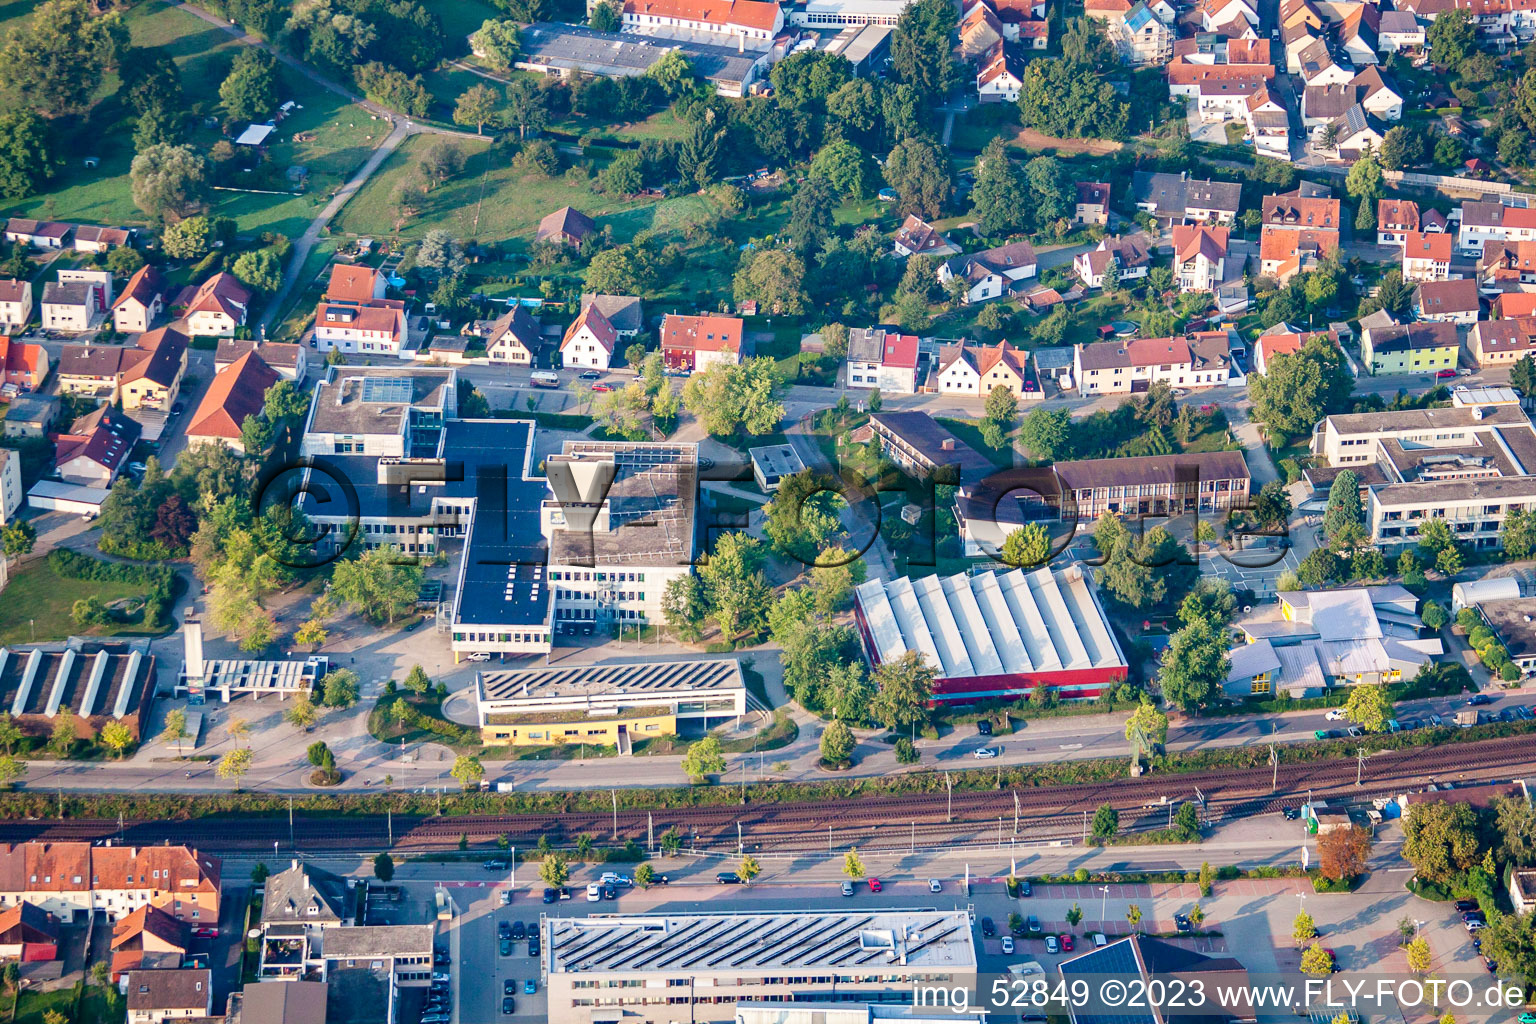 Vue aérienne de LMG à le quartier Berghausen in Pfinztal dans le département Bade-Wurtemberg, Allemagne